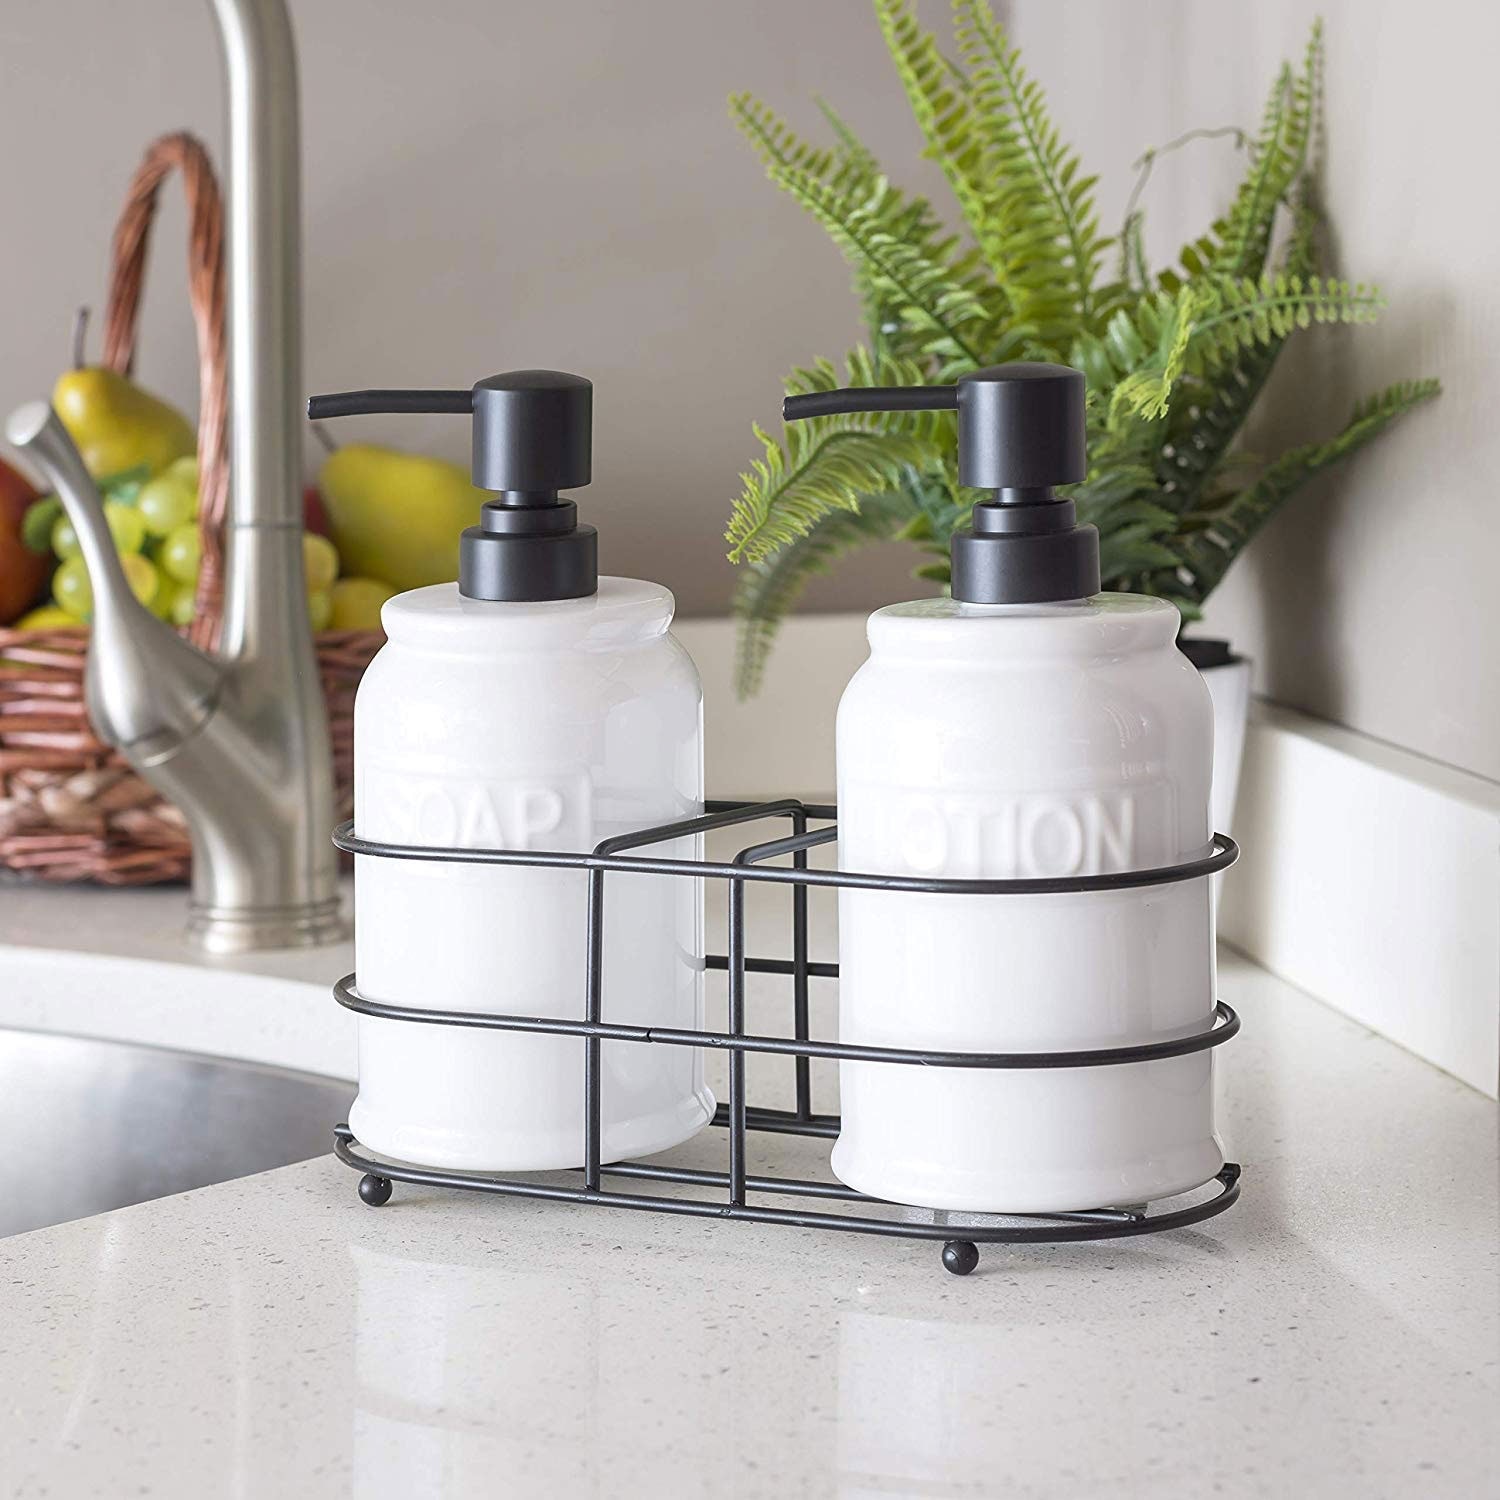 Soap Dispenser & Sink Caddy Set Kitchen Storage Hand Soap